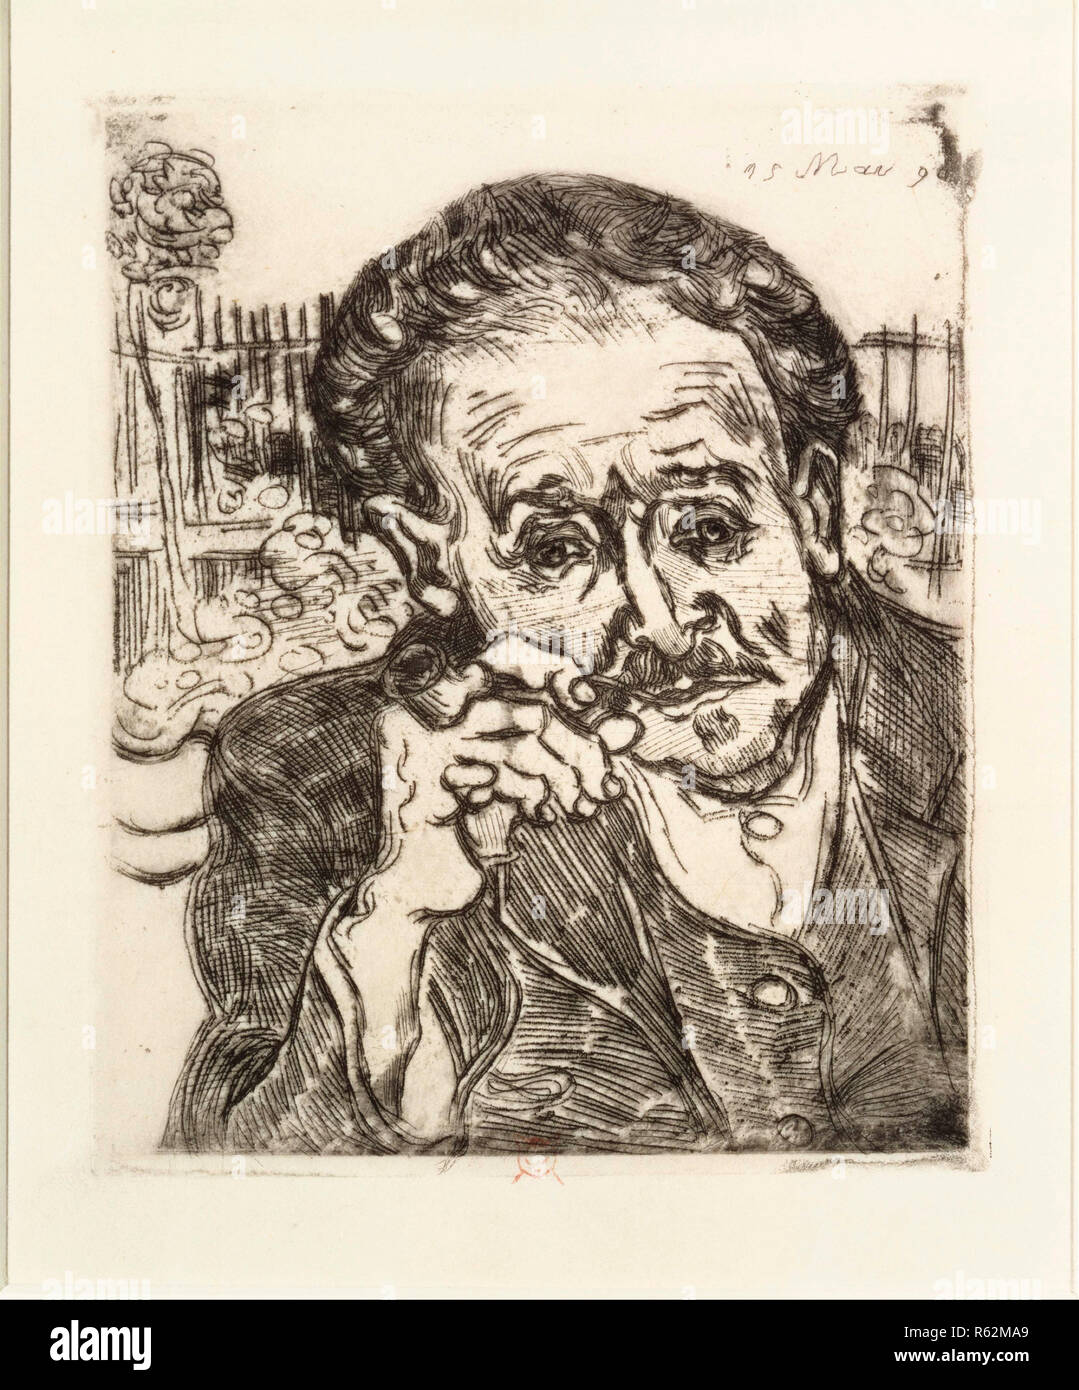 Il dottor Gachet. Data/Periodo: 1890. Opere su carta. Acquaforte su carta. Altezza: 7 mm (0,27 in); larghezza: 5,75 mm (0,22 in). Autore: Vincent van Gogh. Foto Stock